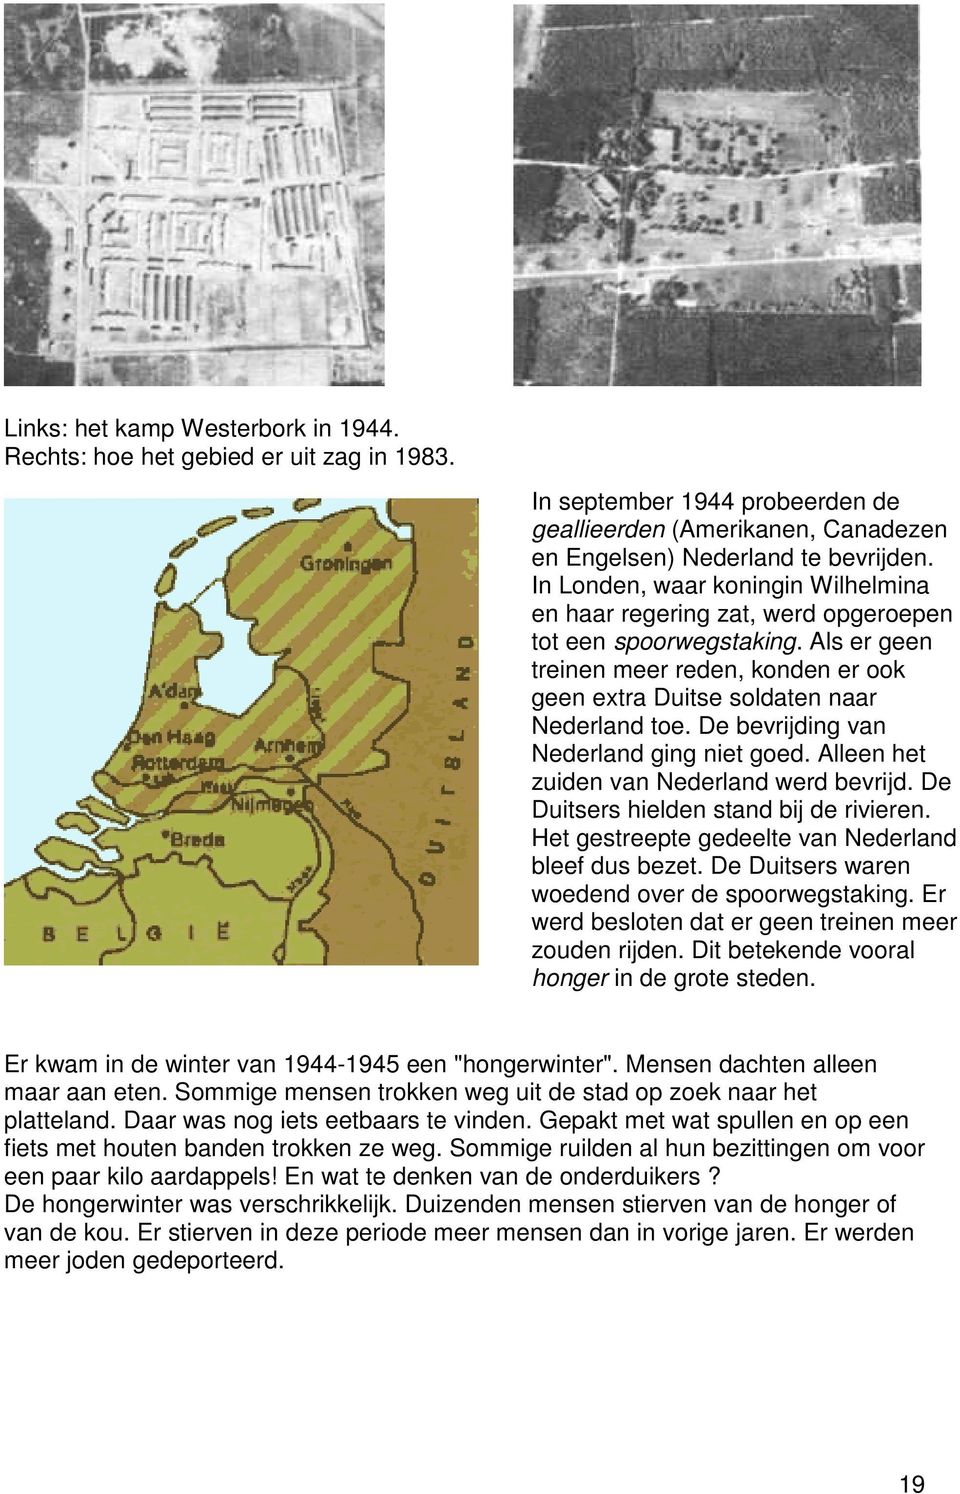 De bevrijding van Nederland ging niet goed. Alleen het zuiden van Nederland werd bevrijd. De Duitsers hielden stand bij de rivieren. Het gestreepte gedeelte van Nederland bleef dus bezet.